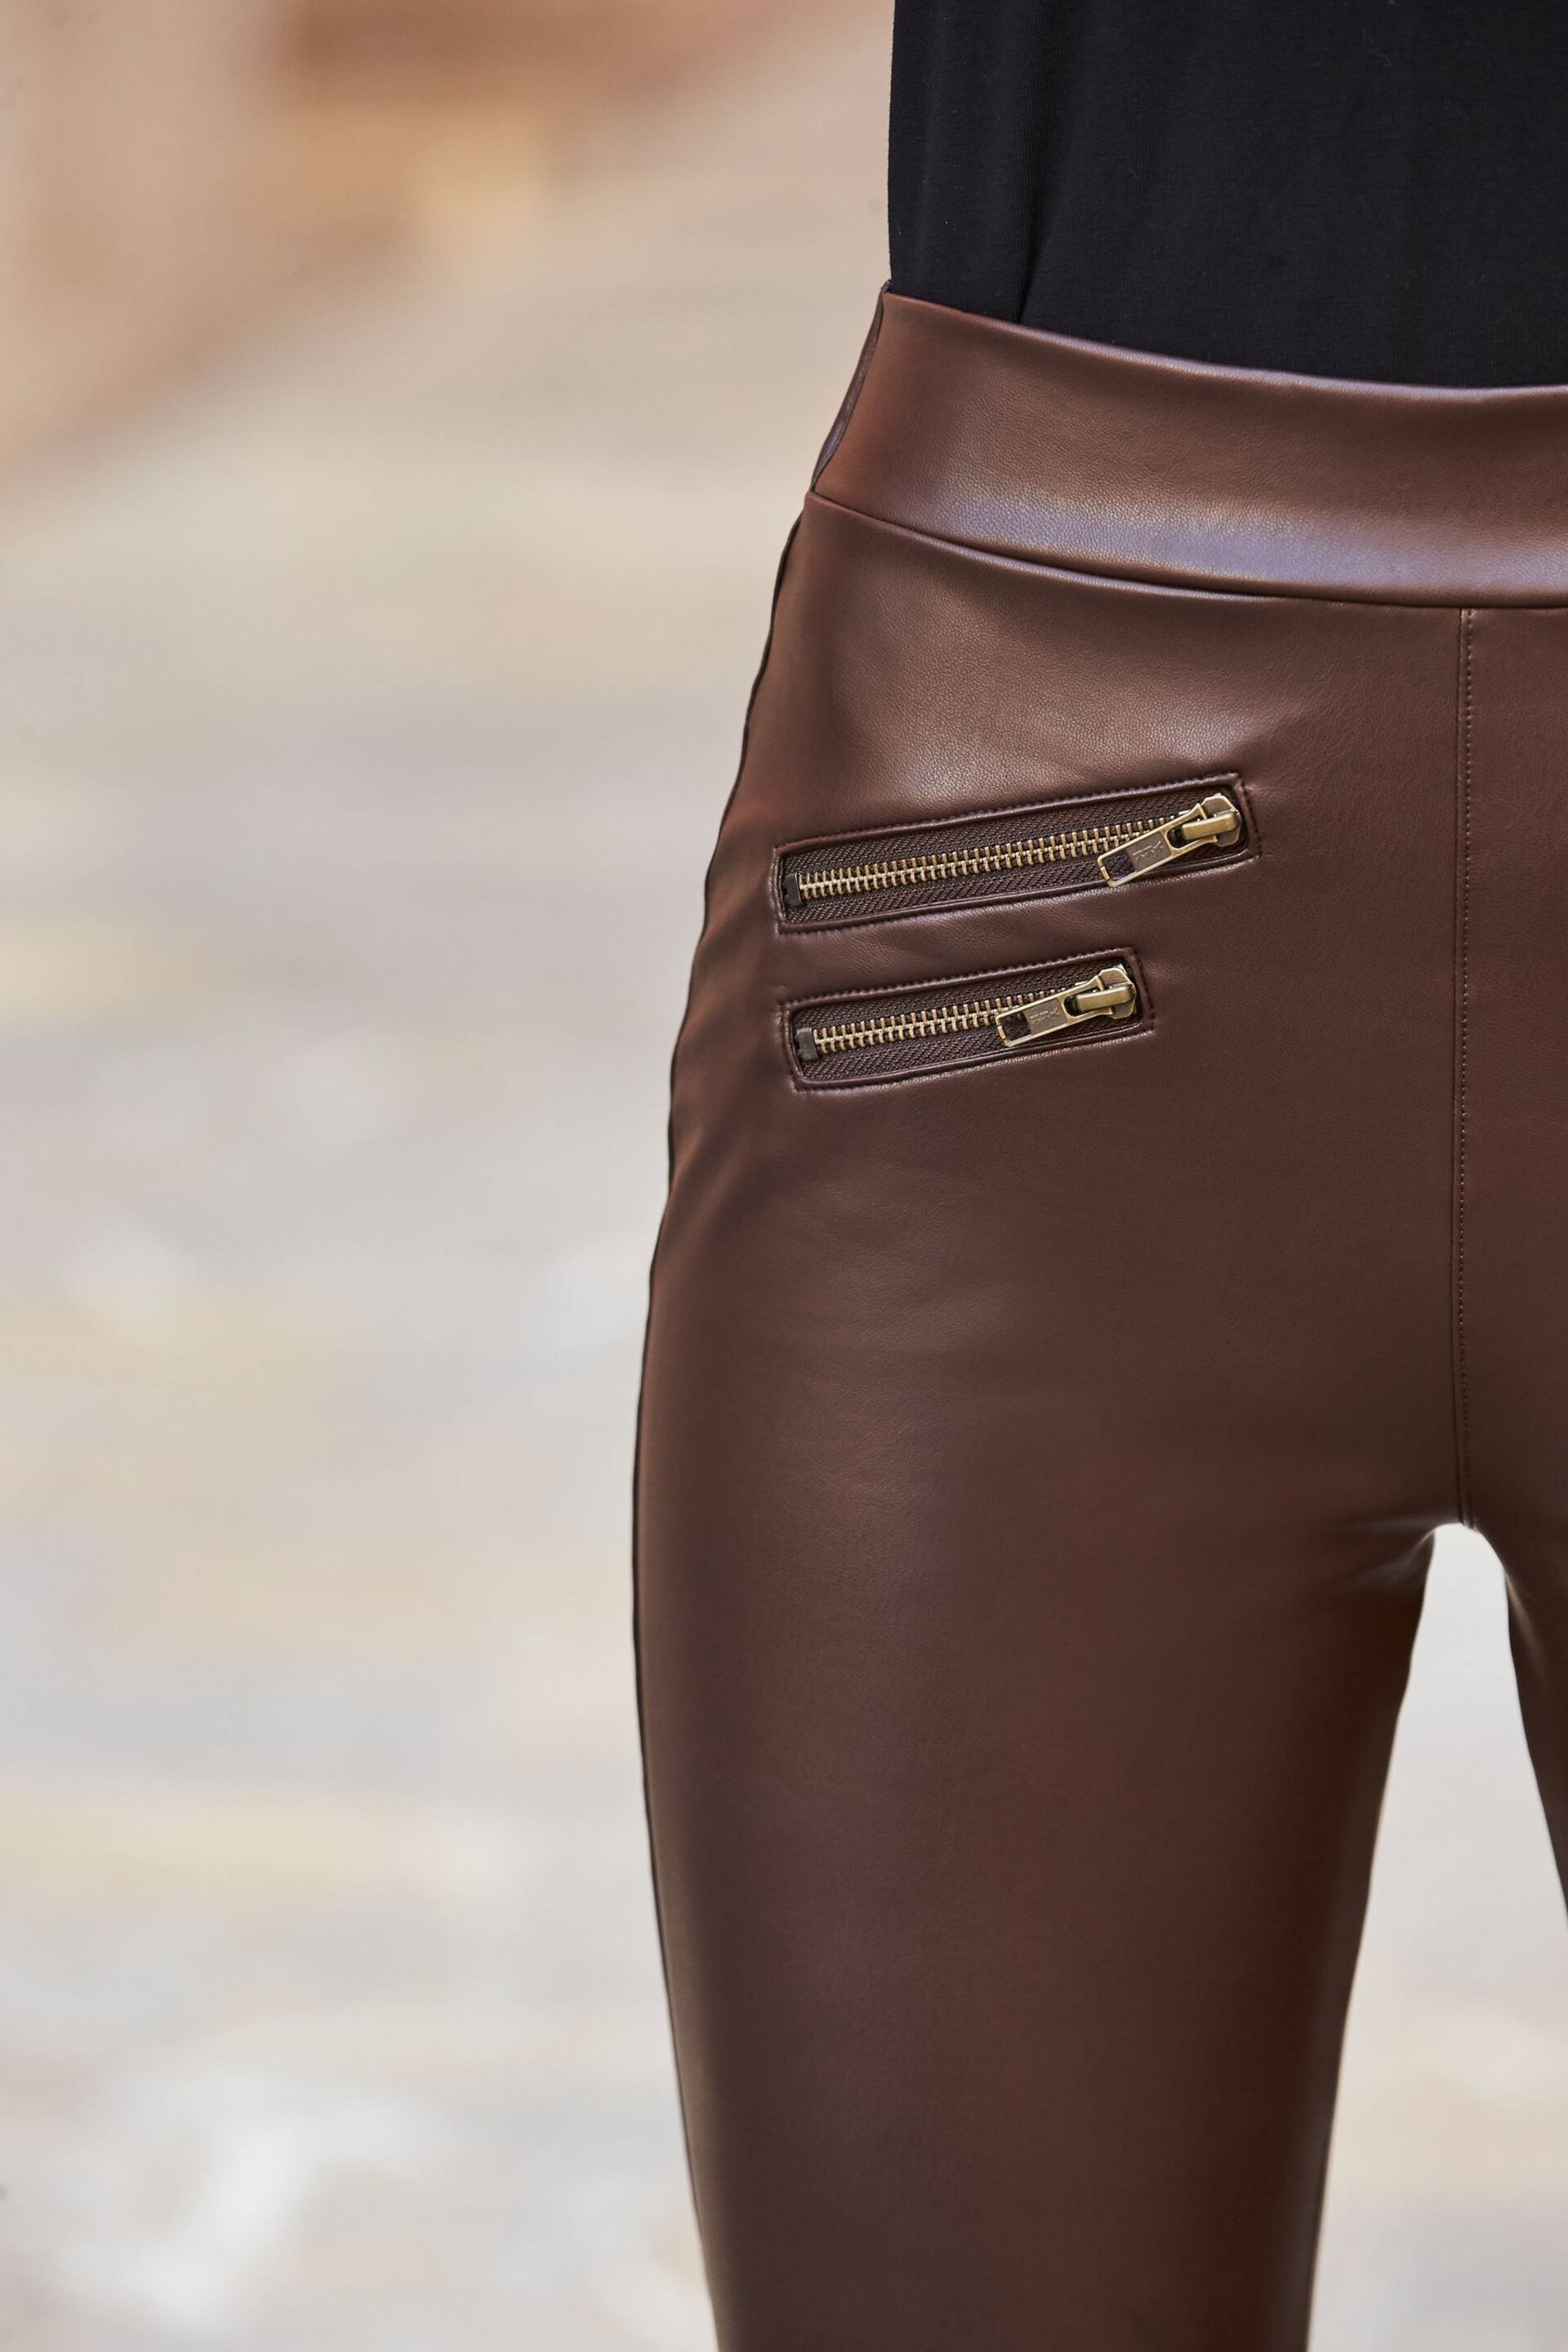 Sosandar Brown/Cream Tall Leather Look Premium Leggings - Image 5 of 5